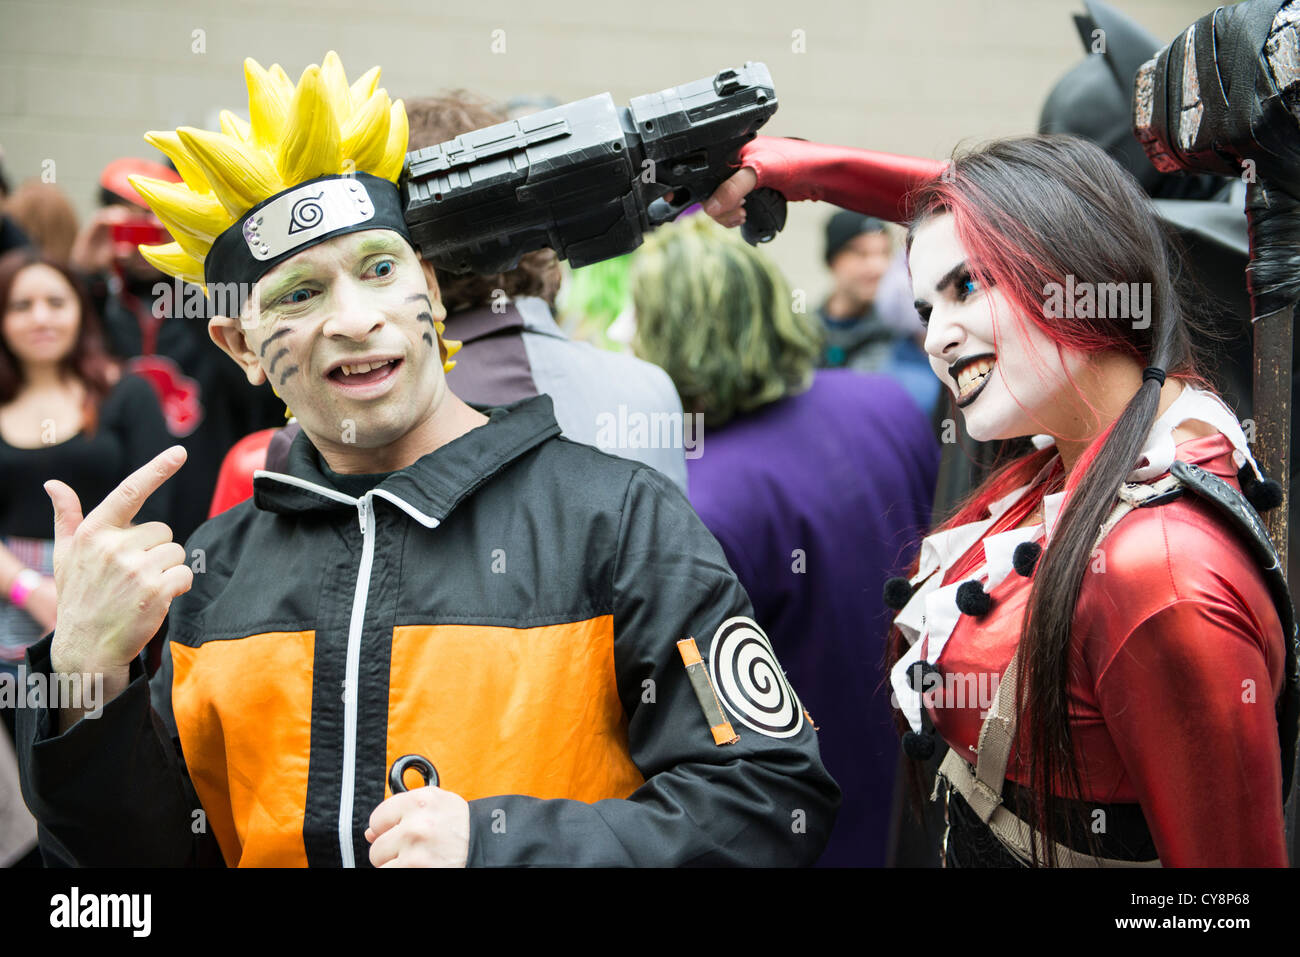 Naruto cosplay immagini e fotografie stock ad alta risoluzione - Alamy